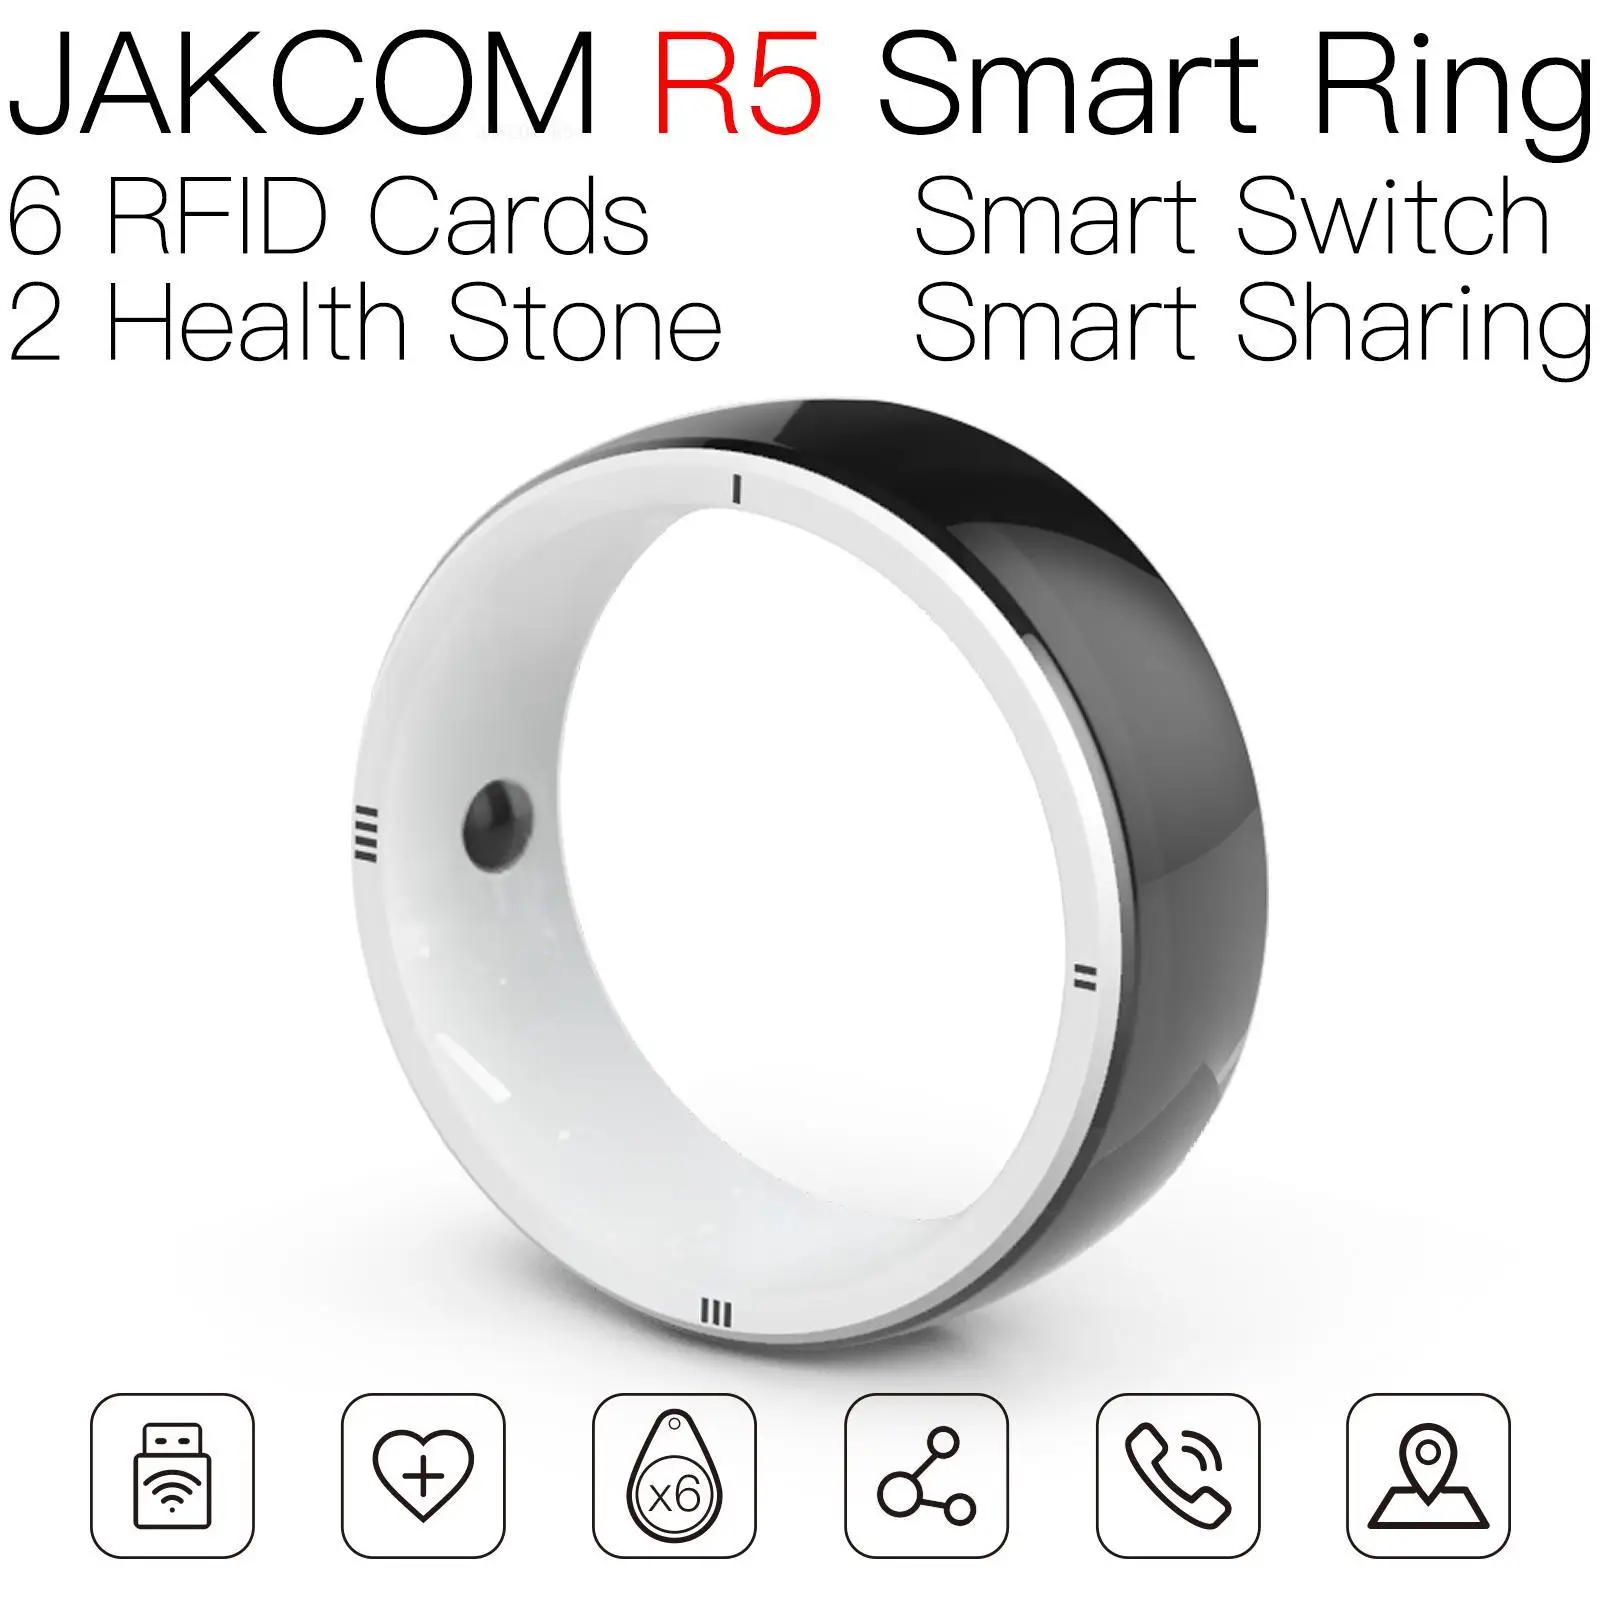 

Умное кольцо JAKCOM R5, новее, чем программное обеспечение для анимации, копия синего излучения, наклейка на SIM-телефон, рчид, карта 125 кГц, микро-метка, 125 стандарта, металлический